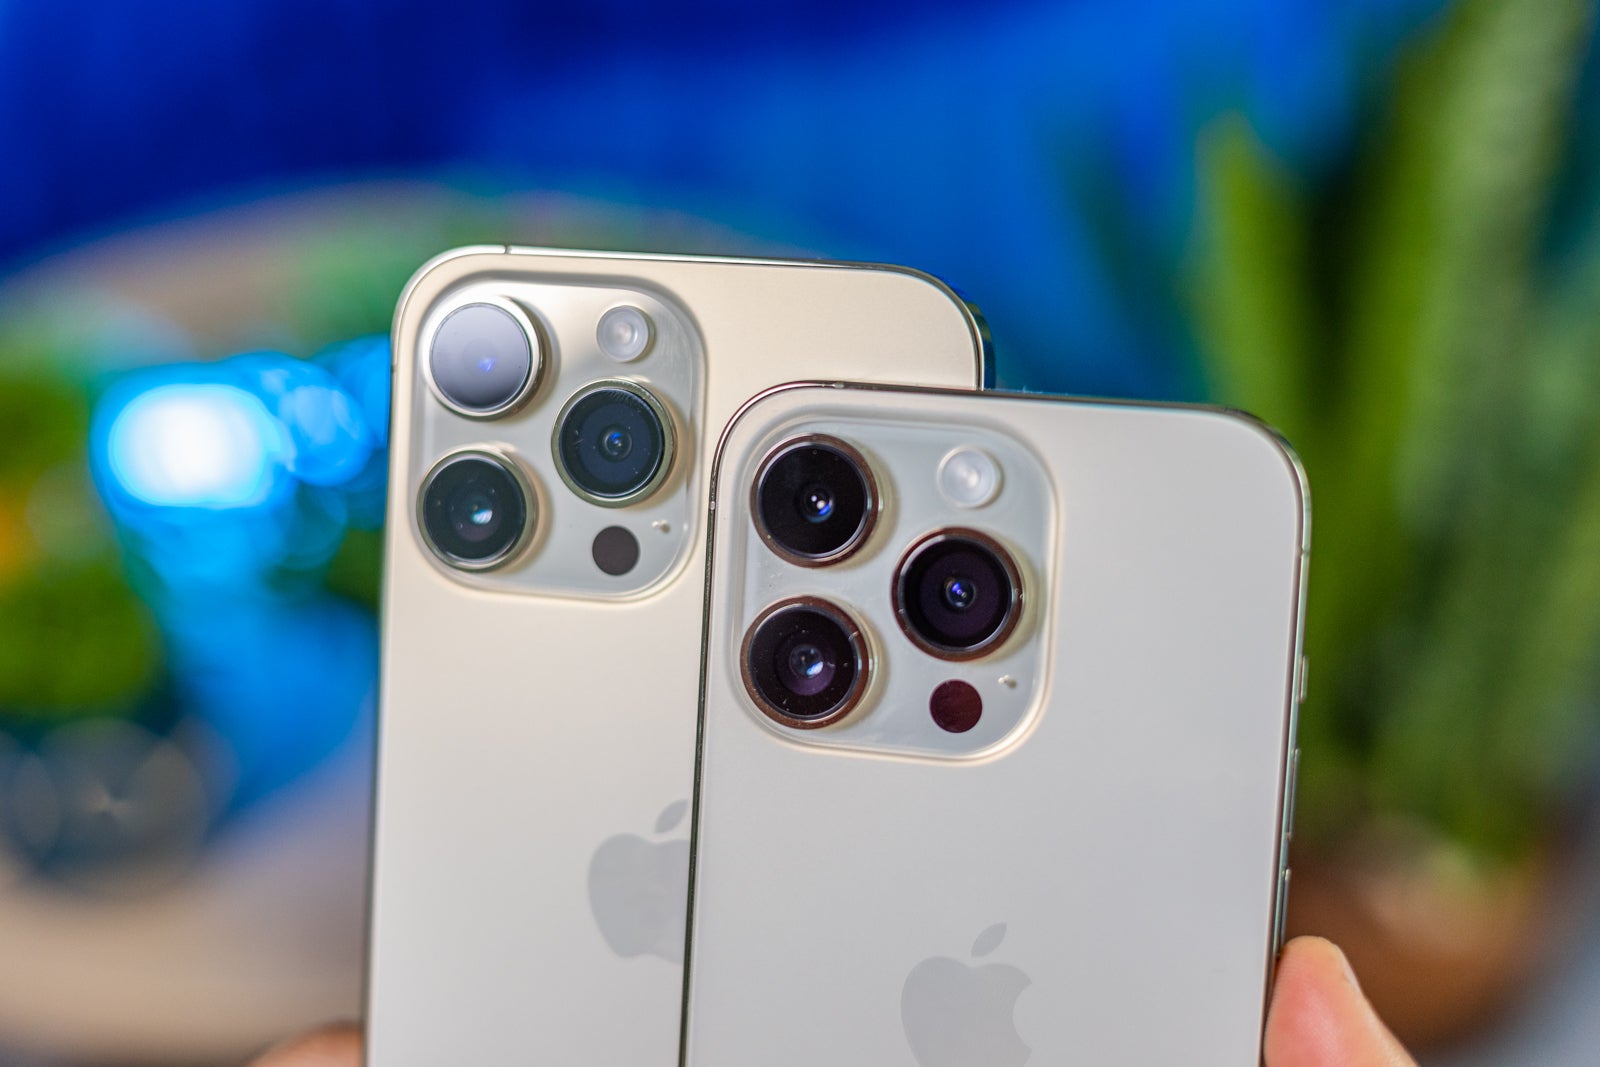 (Credito Image - PhoneArena) IPhone 14 Pro vs 14 Pro Max Camere - Apple iPhone 14 Pro Max vs iPhone 14 Pro: scegli le tue dimensioni!